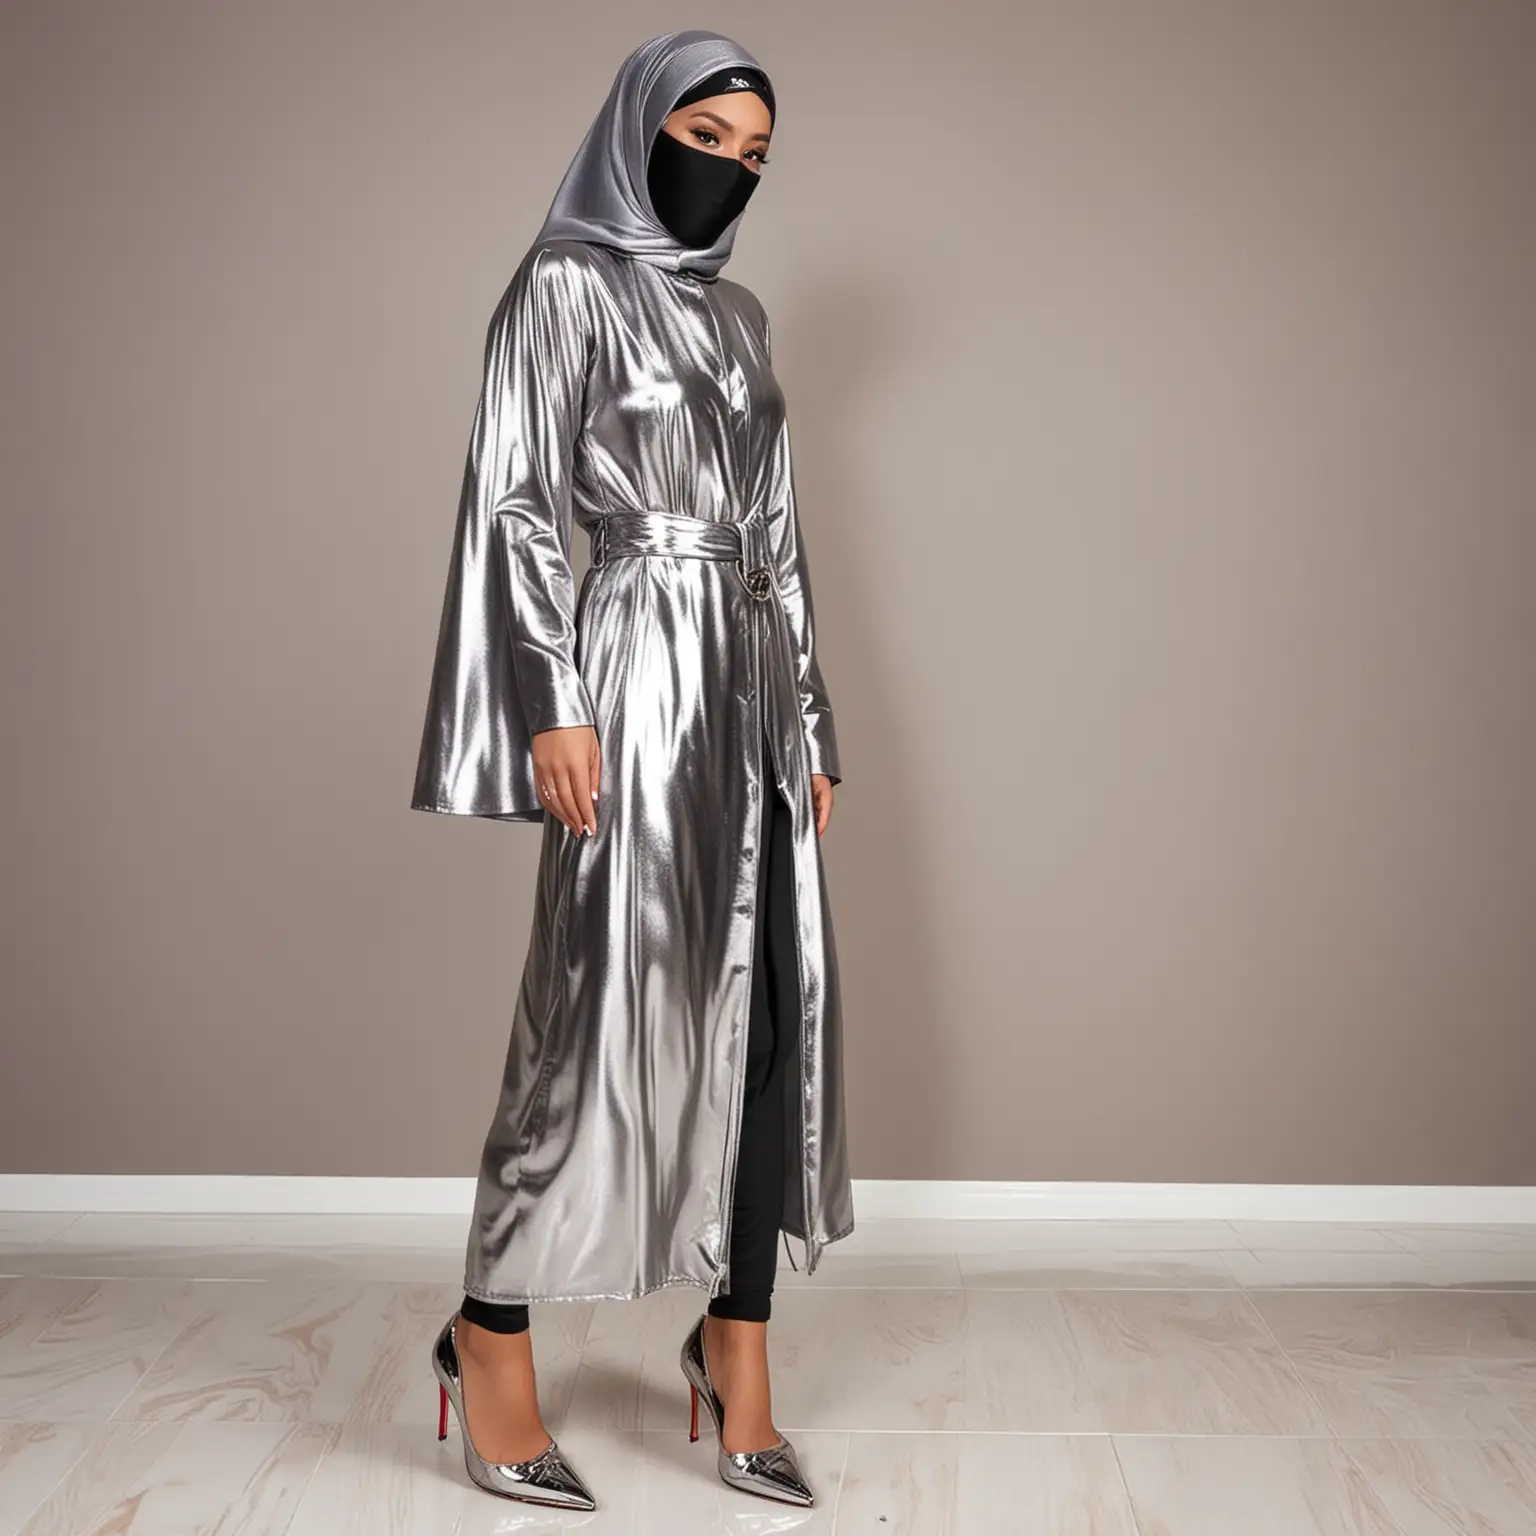 Elegant Malay Muslim Woman in Luxurious Metallic Abaya and Louboutin Heels